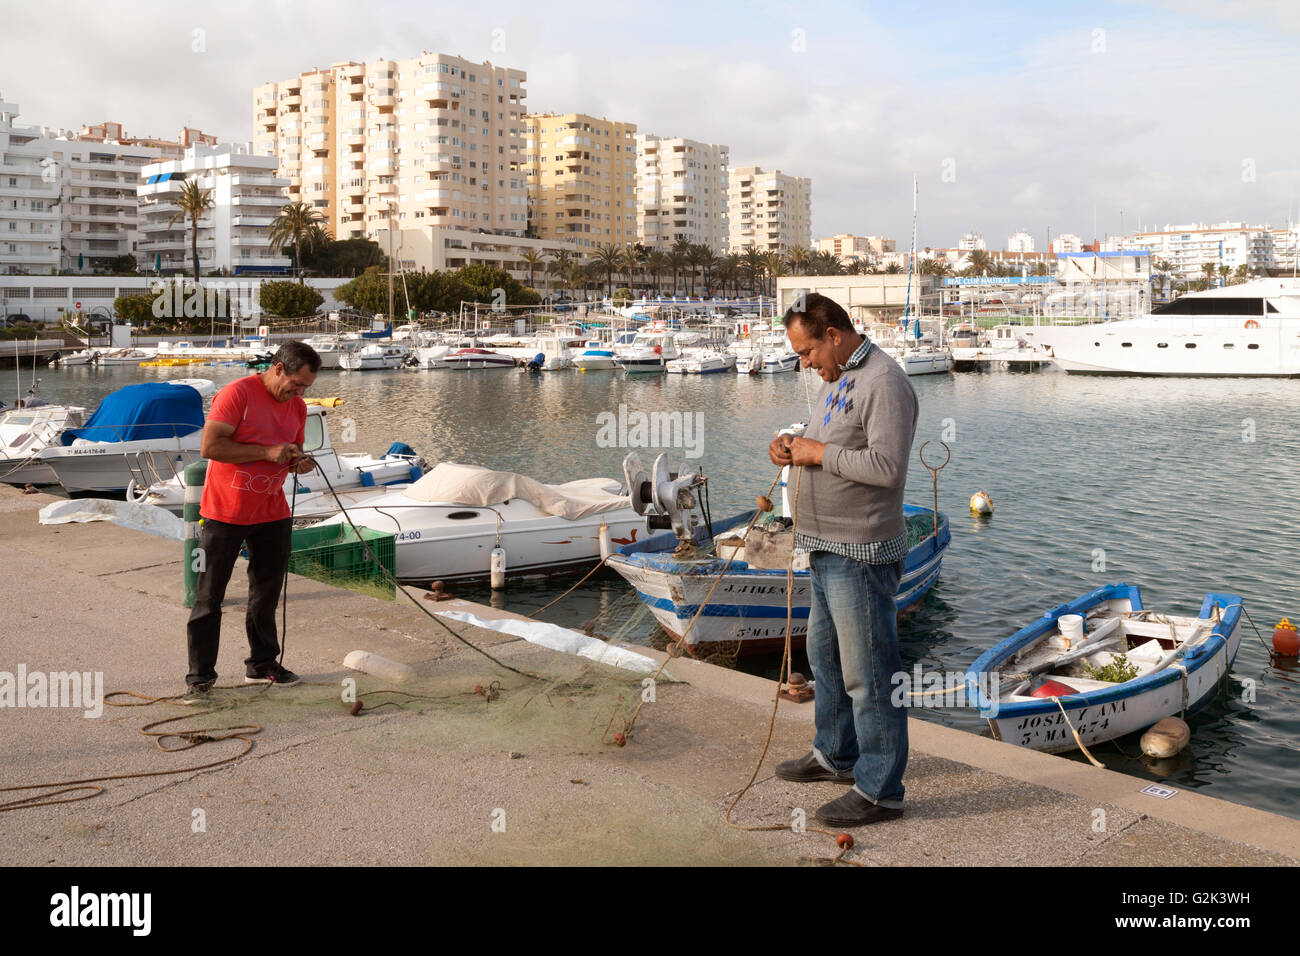 Les pêcheurs espagnols réparent leurs filets de pêche, le port d'Estepona, Andalousie Espagne europe Banque D'Images